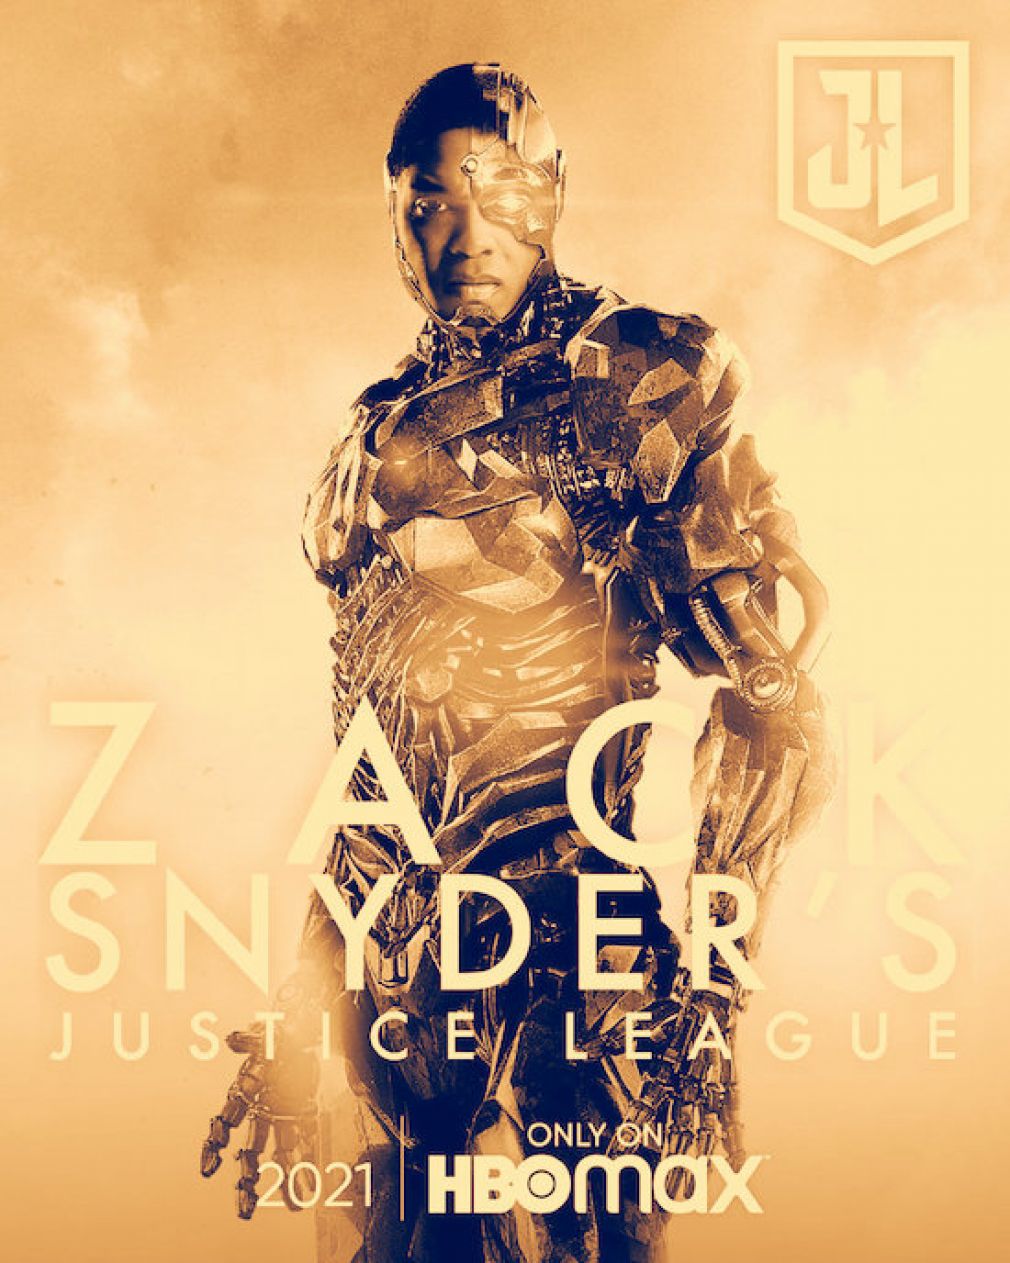 Az Igazság Ligája két rendező keze munkája volt, mivel Zack Snyder személyes okokból kiszállt a projektből. Ez sajnos az évekkel ezelőtt a mozikba került alkotáson is látszott